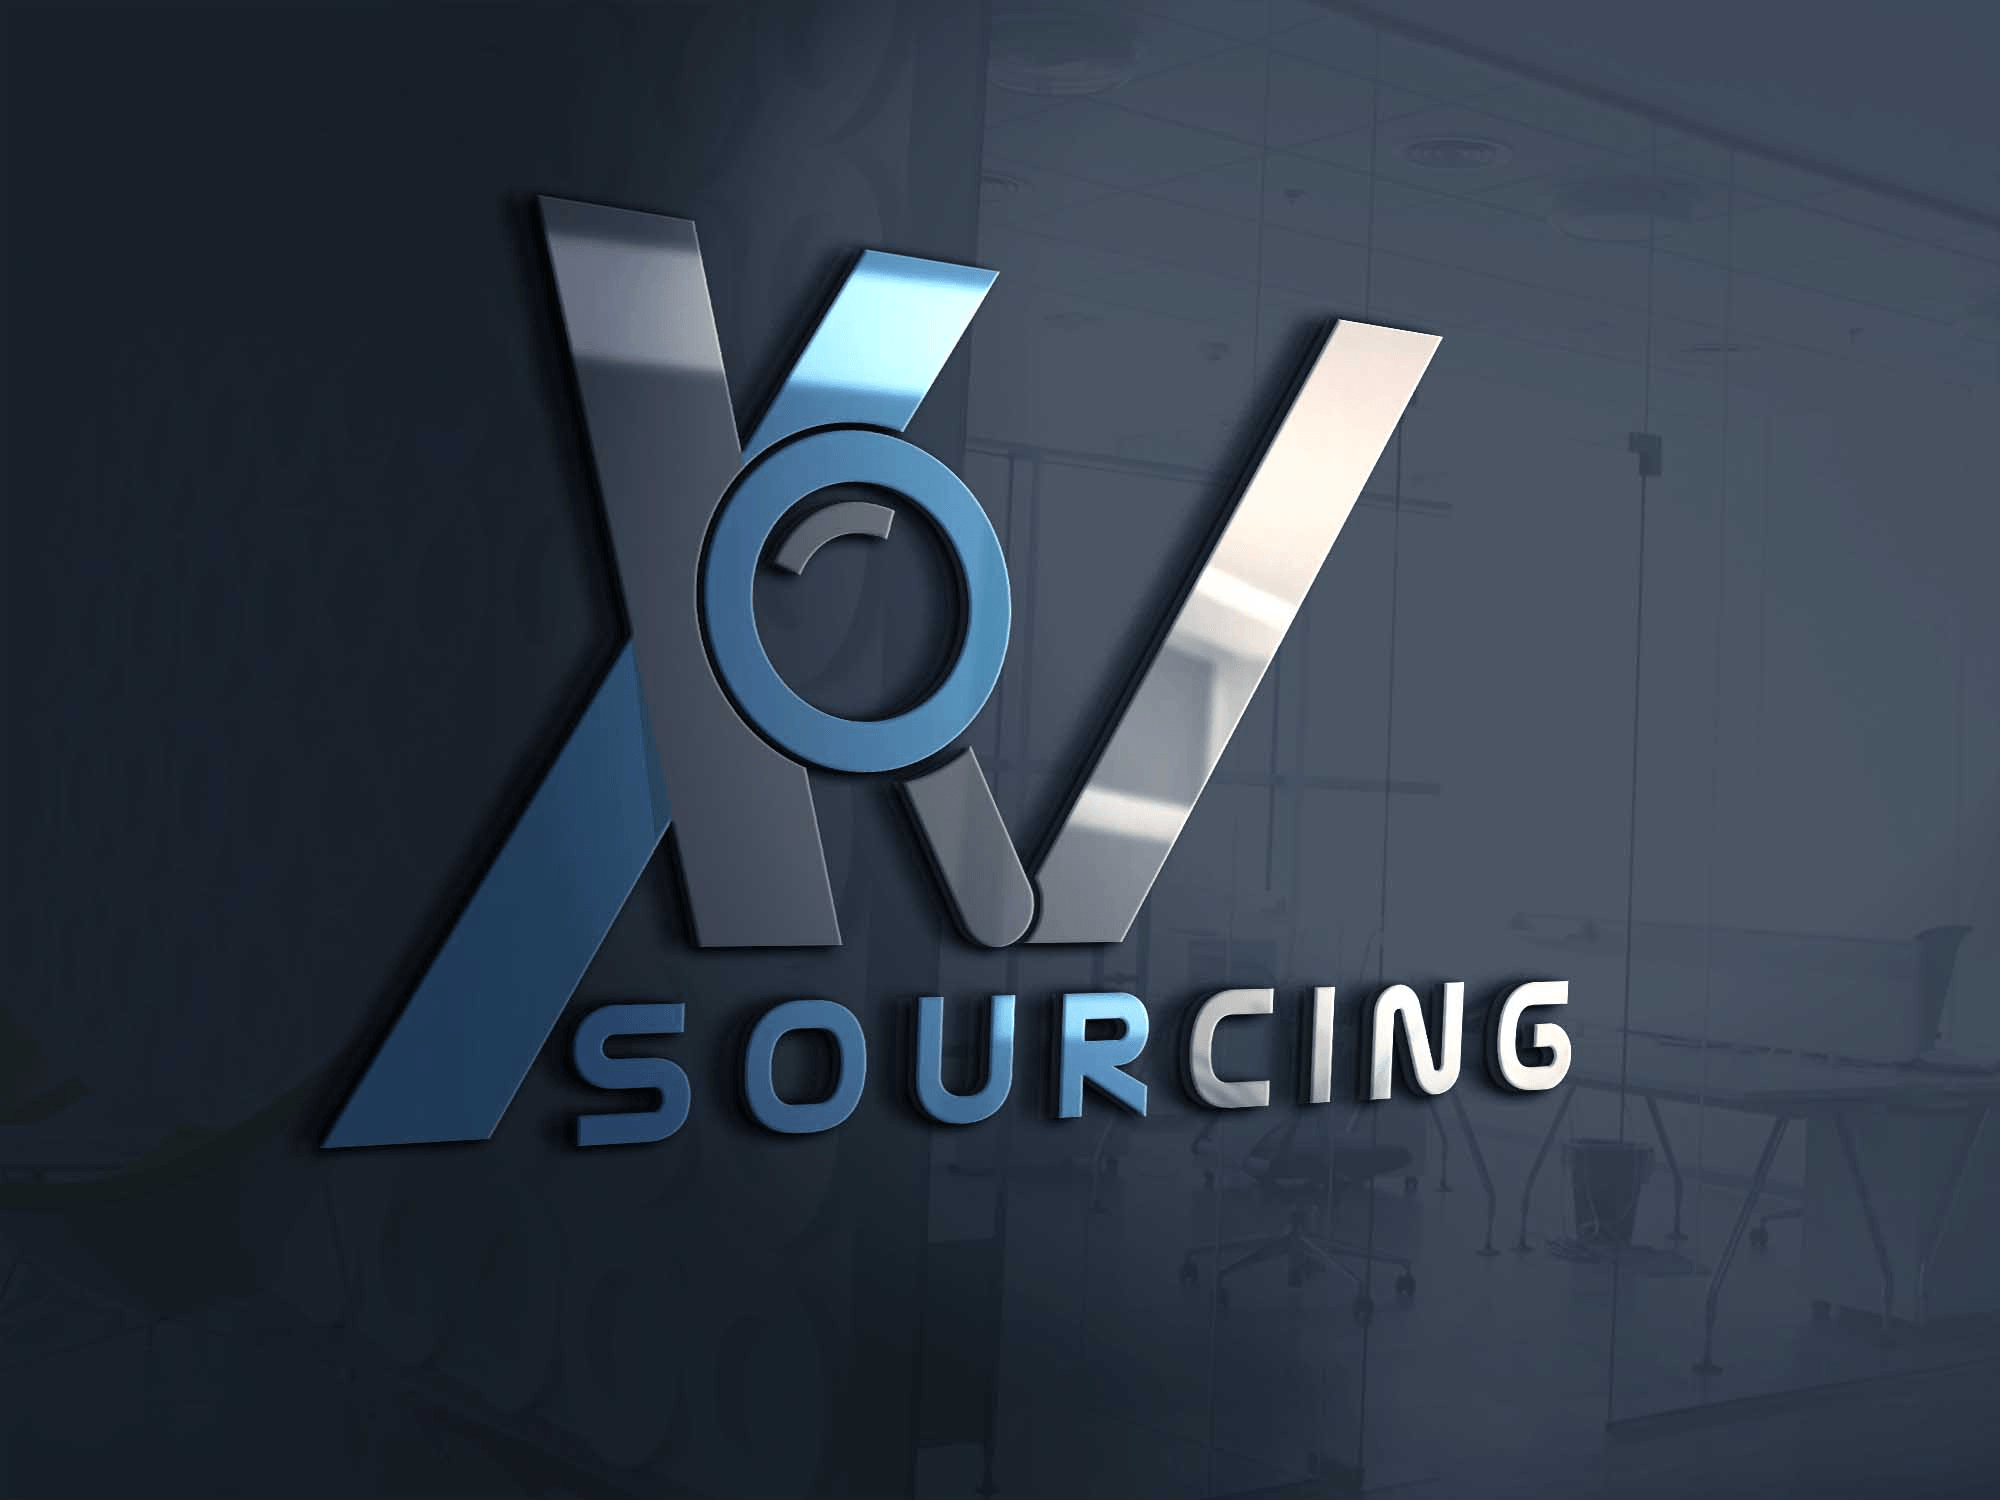 XV Logo - Logo Design Contests XV Sourcing Logo Design Design No. 60